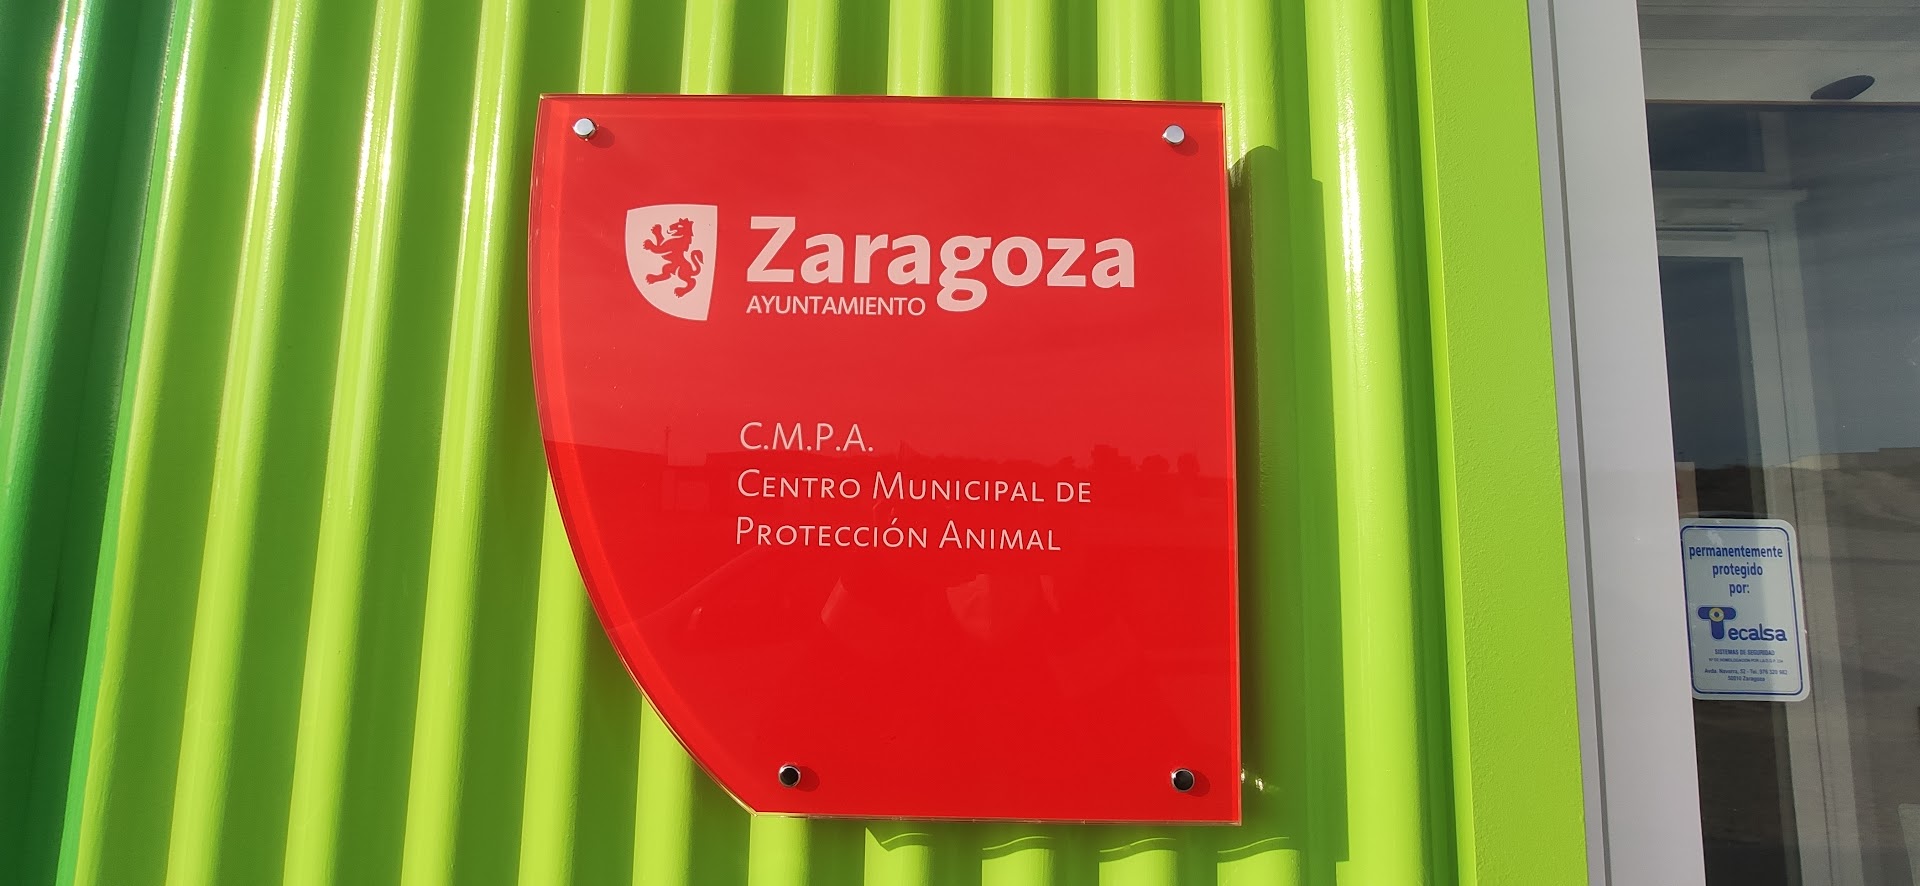 Centro Municipal de Protección Animal - Ayuntamiento de Zaragoza